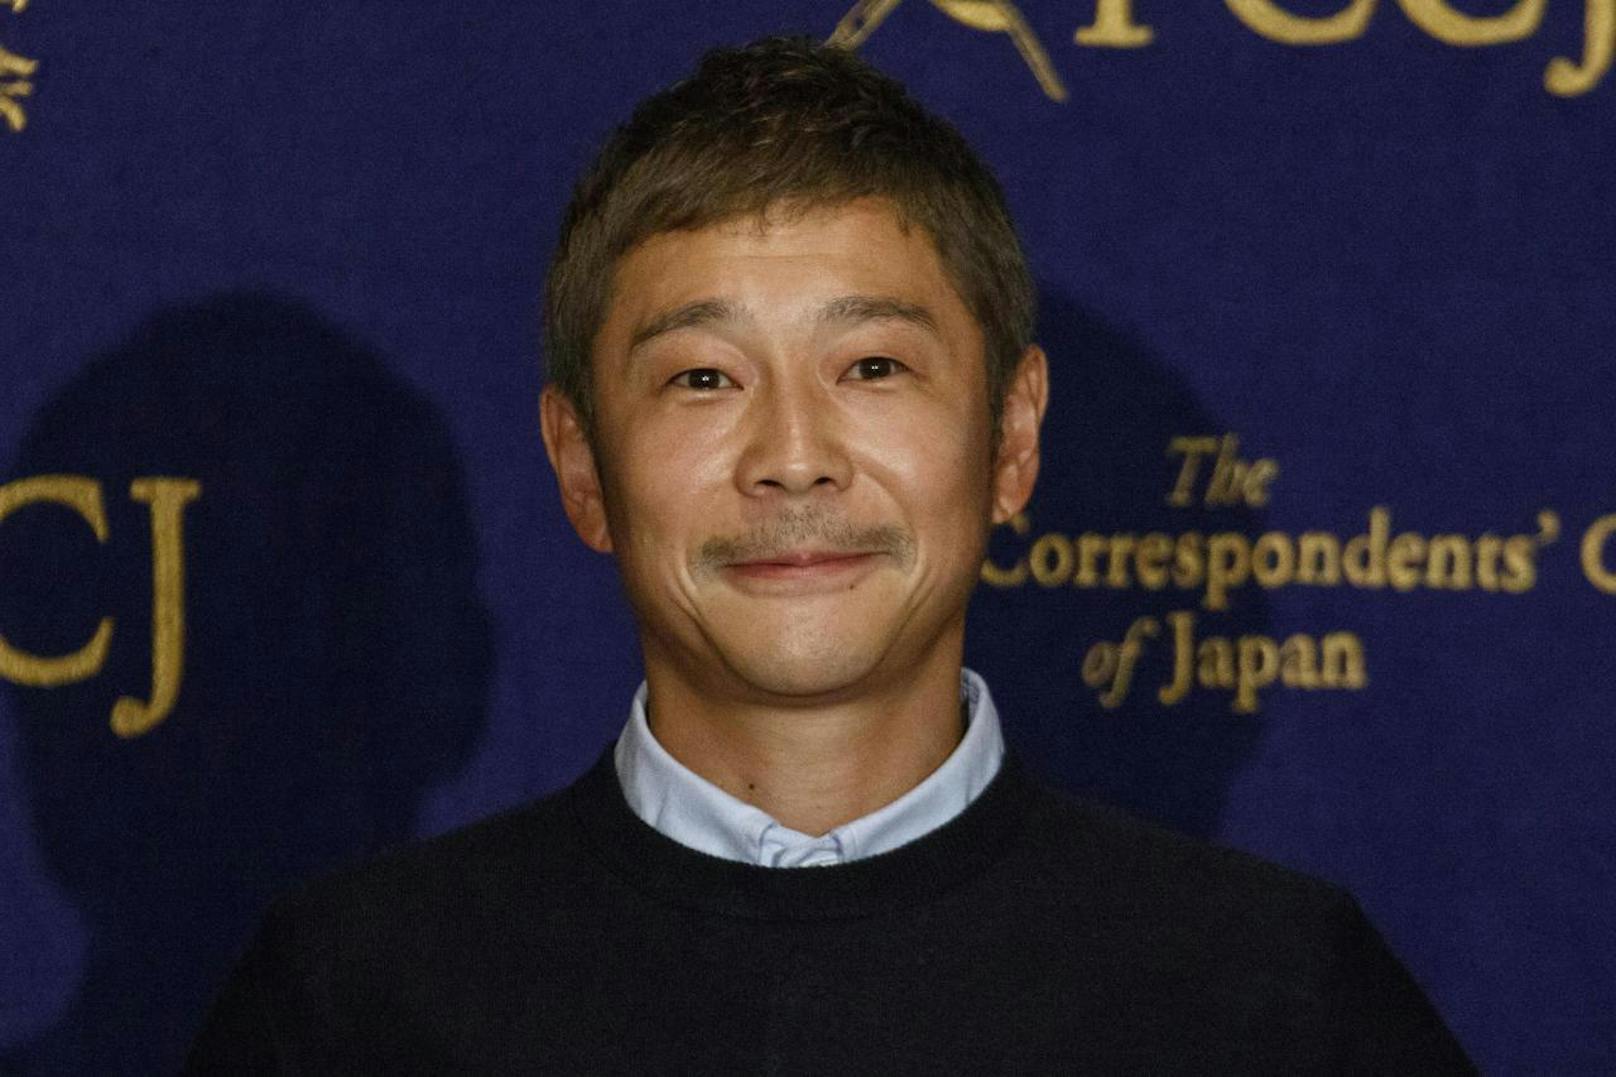 Der Japaner und künftige Weltraumtourist Maezawa steht mit seinem Vermögen an 18. Stelle der reichsten Menschen seines Landes.